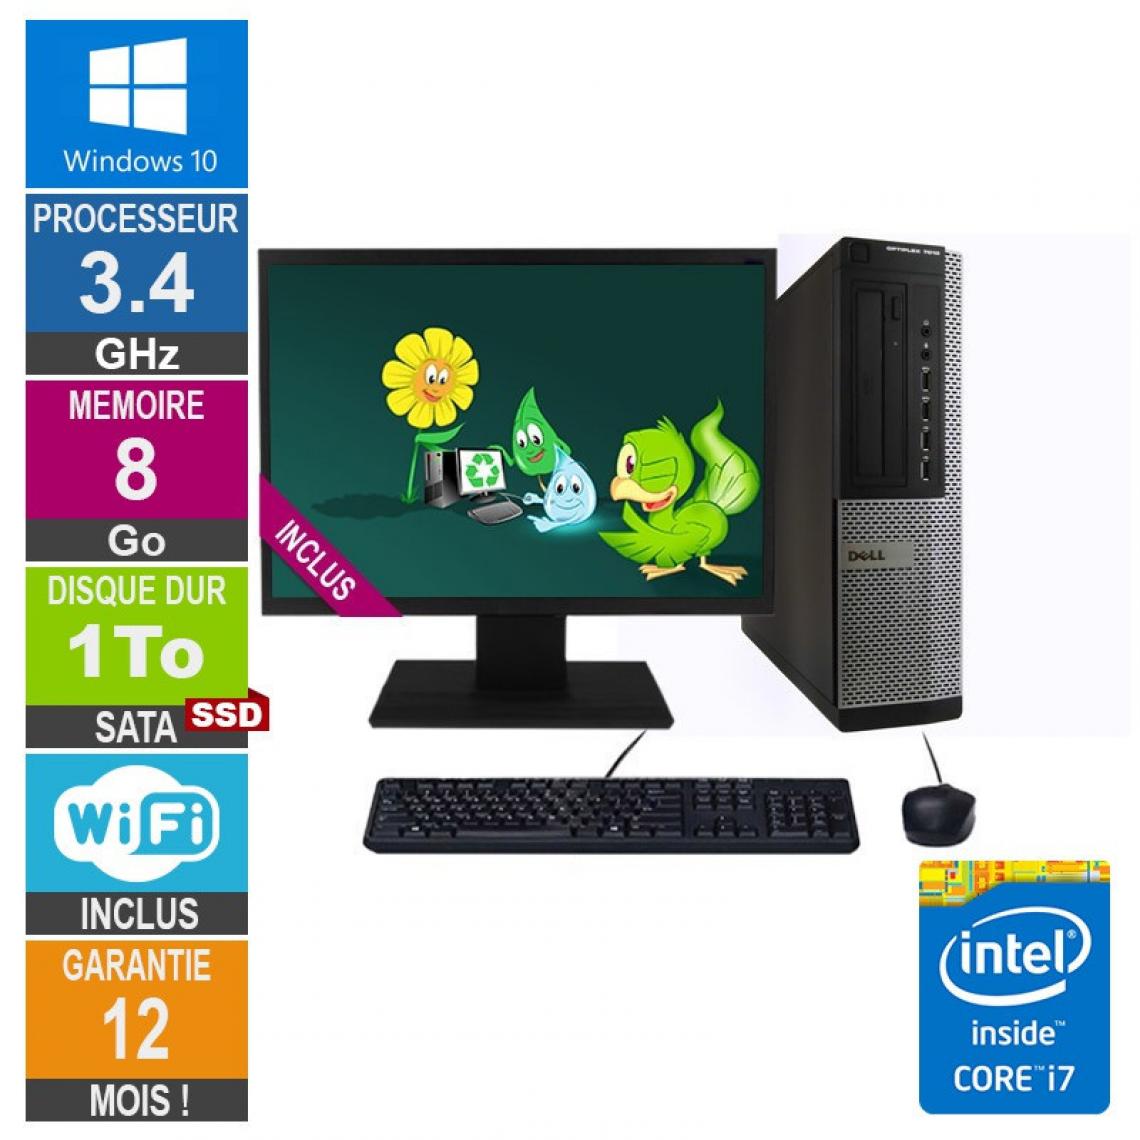 Dell - PC Dell 7010 DT Core i7-3770 3.40GHz 8Go/1To SSD Wifi W10 + Ecran 19 - PC Fixe